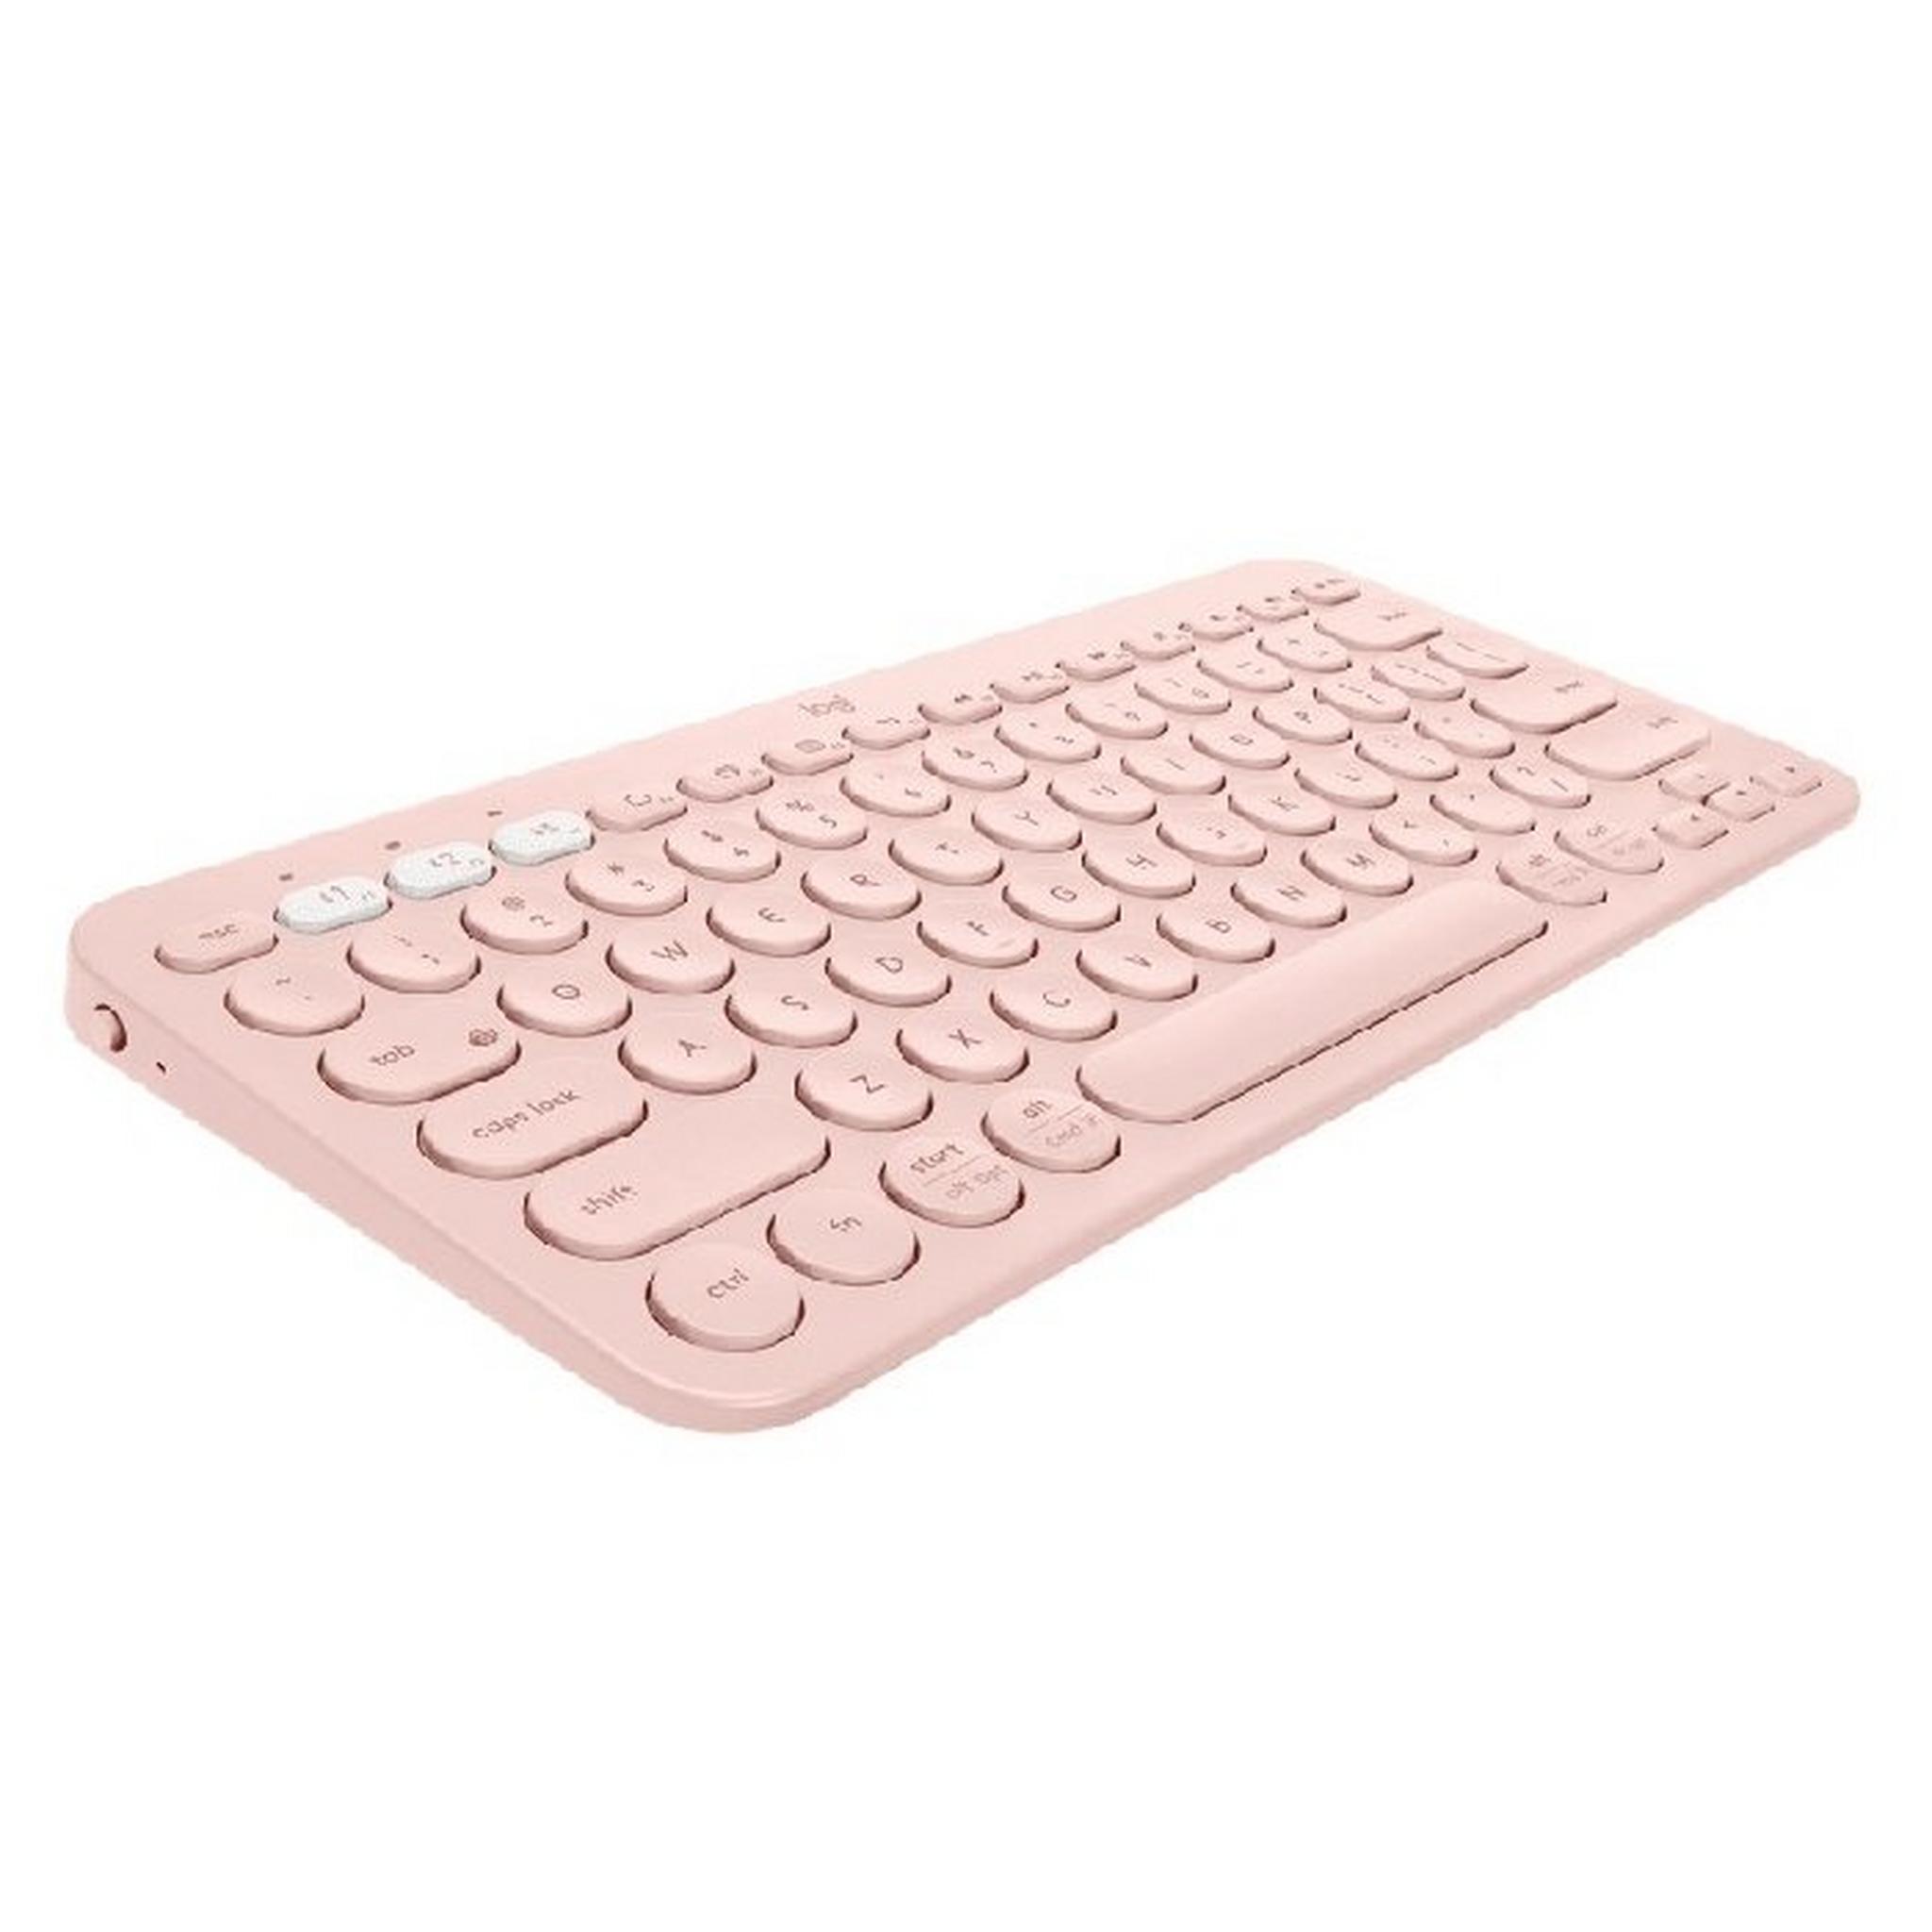 لوحة مفاتيح متعدد الأجهزة بلوتوث كي 380 من لوجتيك - وردي